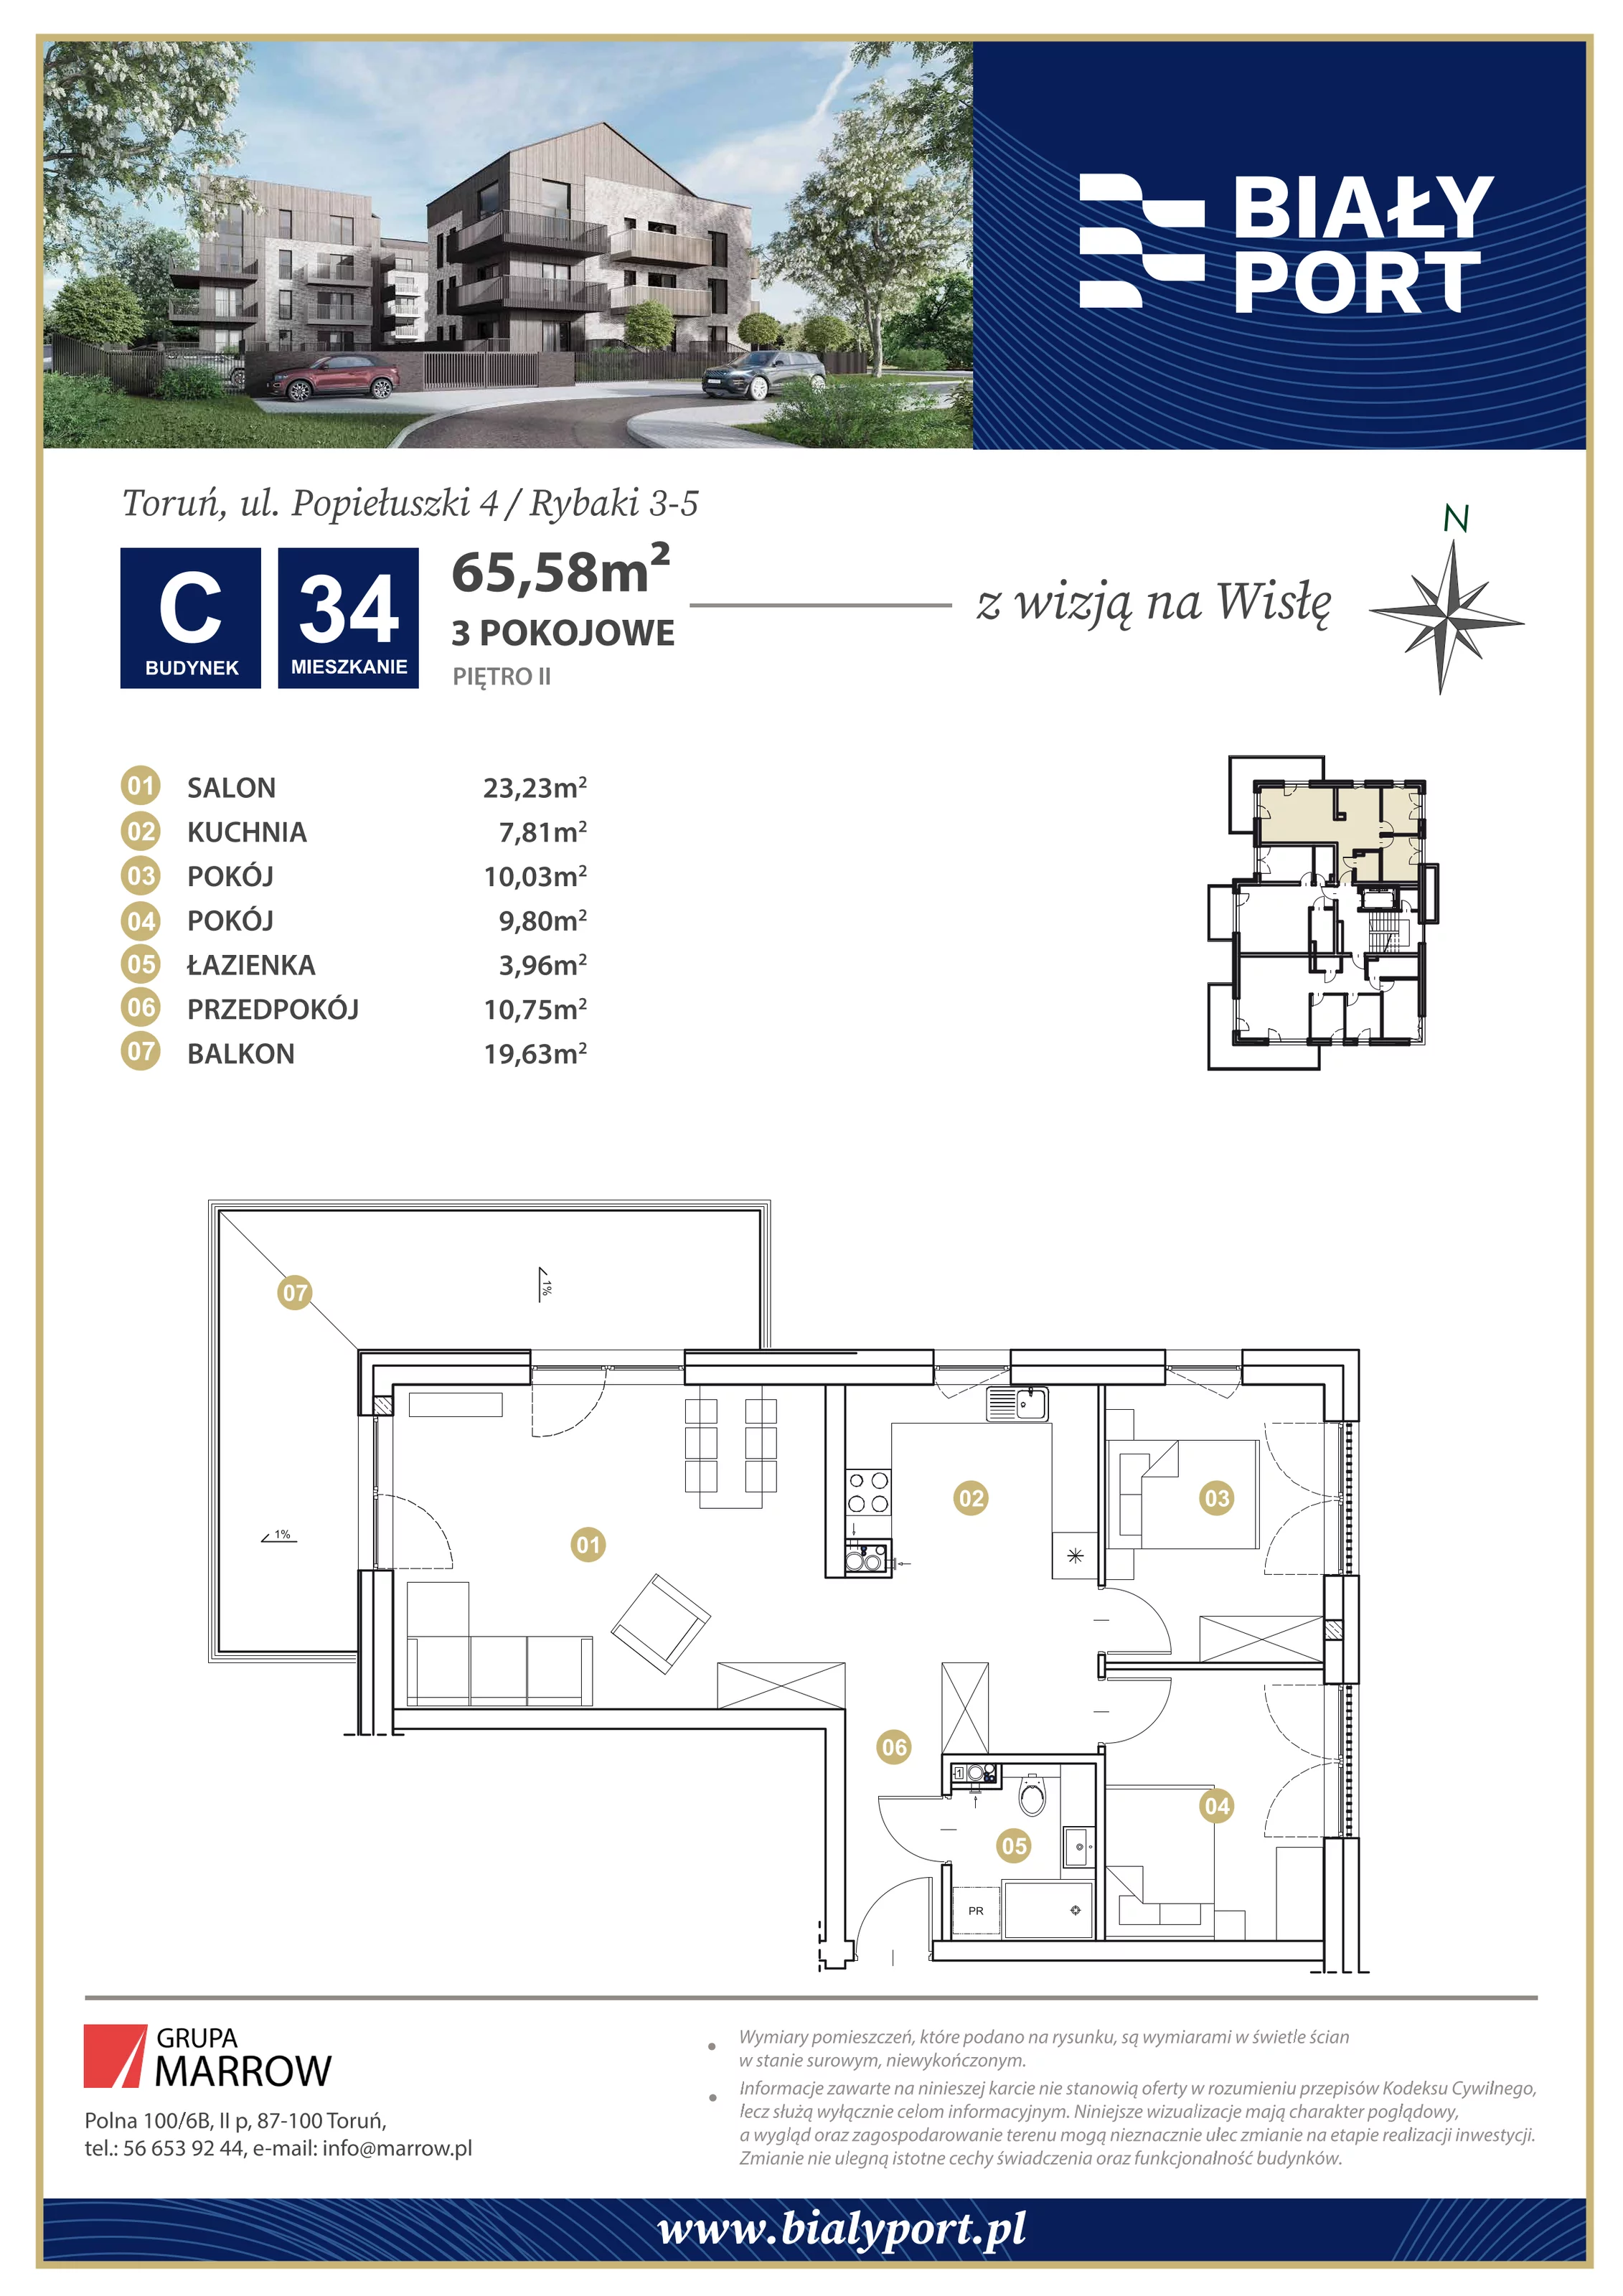 Mieszkanie 65,58 m², piętro 2, oferta nr 34, Biały Port, Toruń, Rybaki, ul. Popiełuszki 4